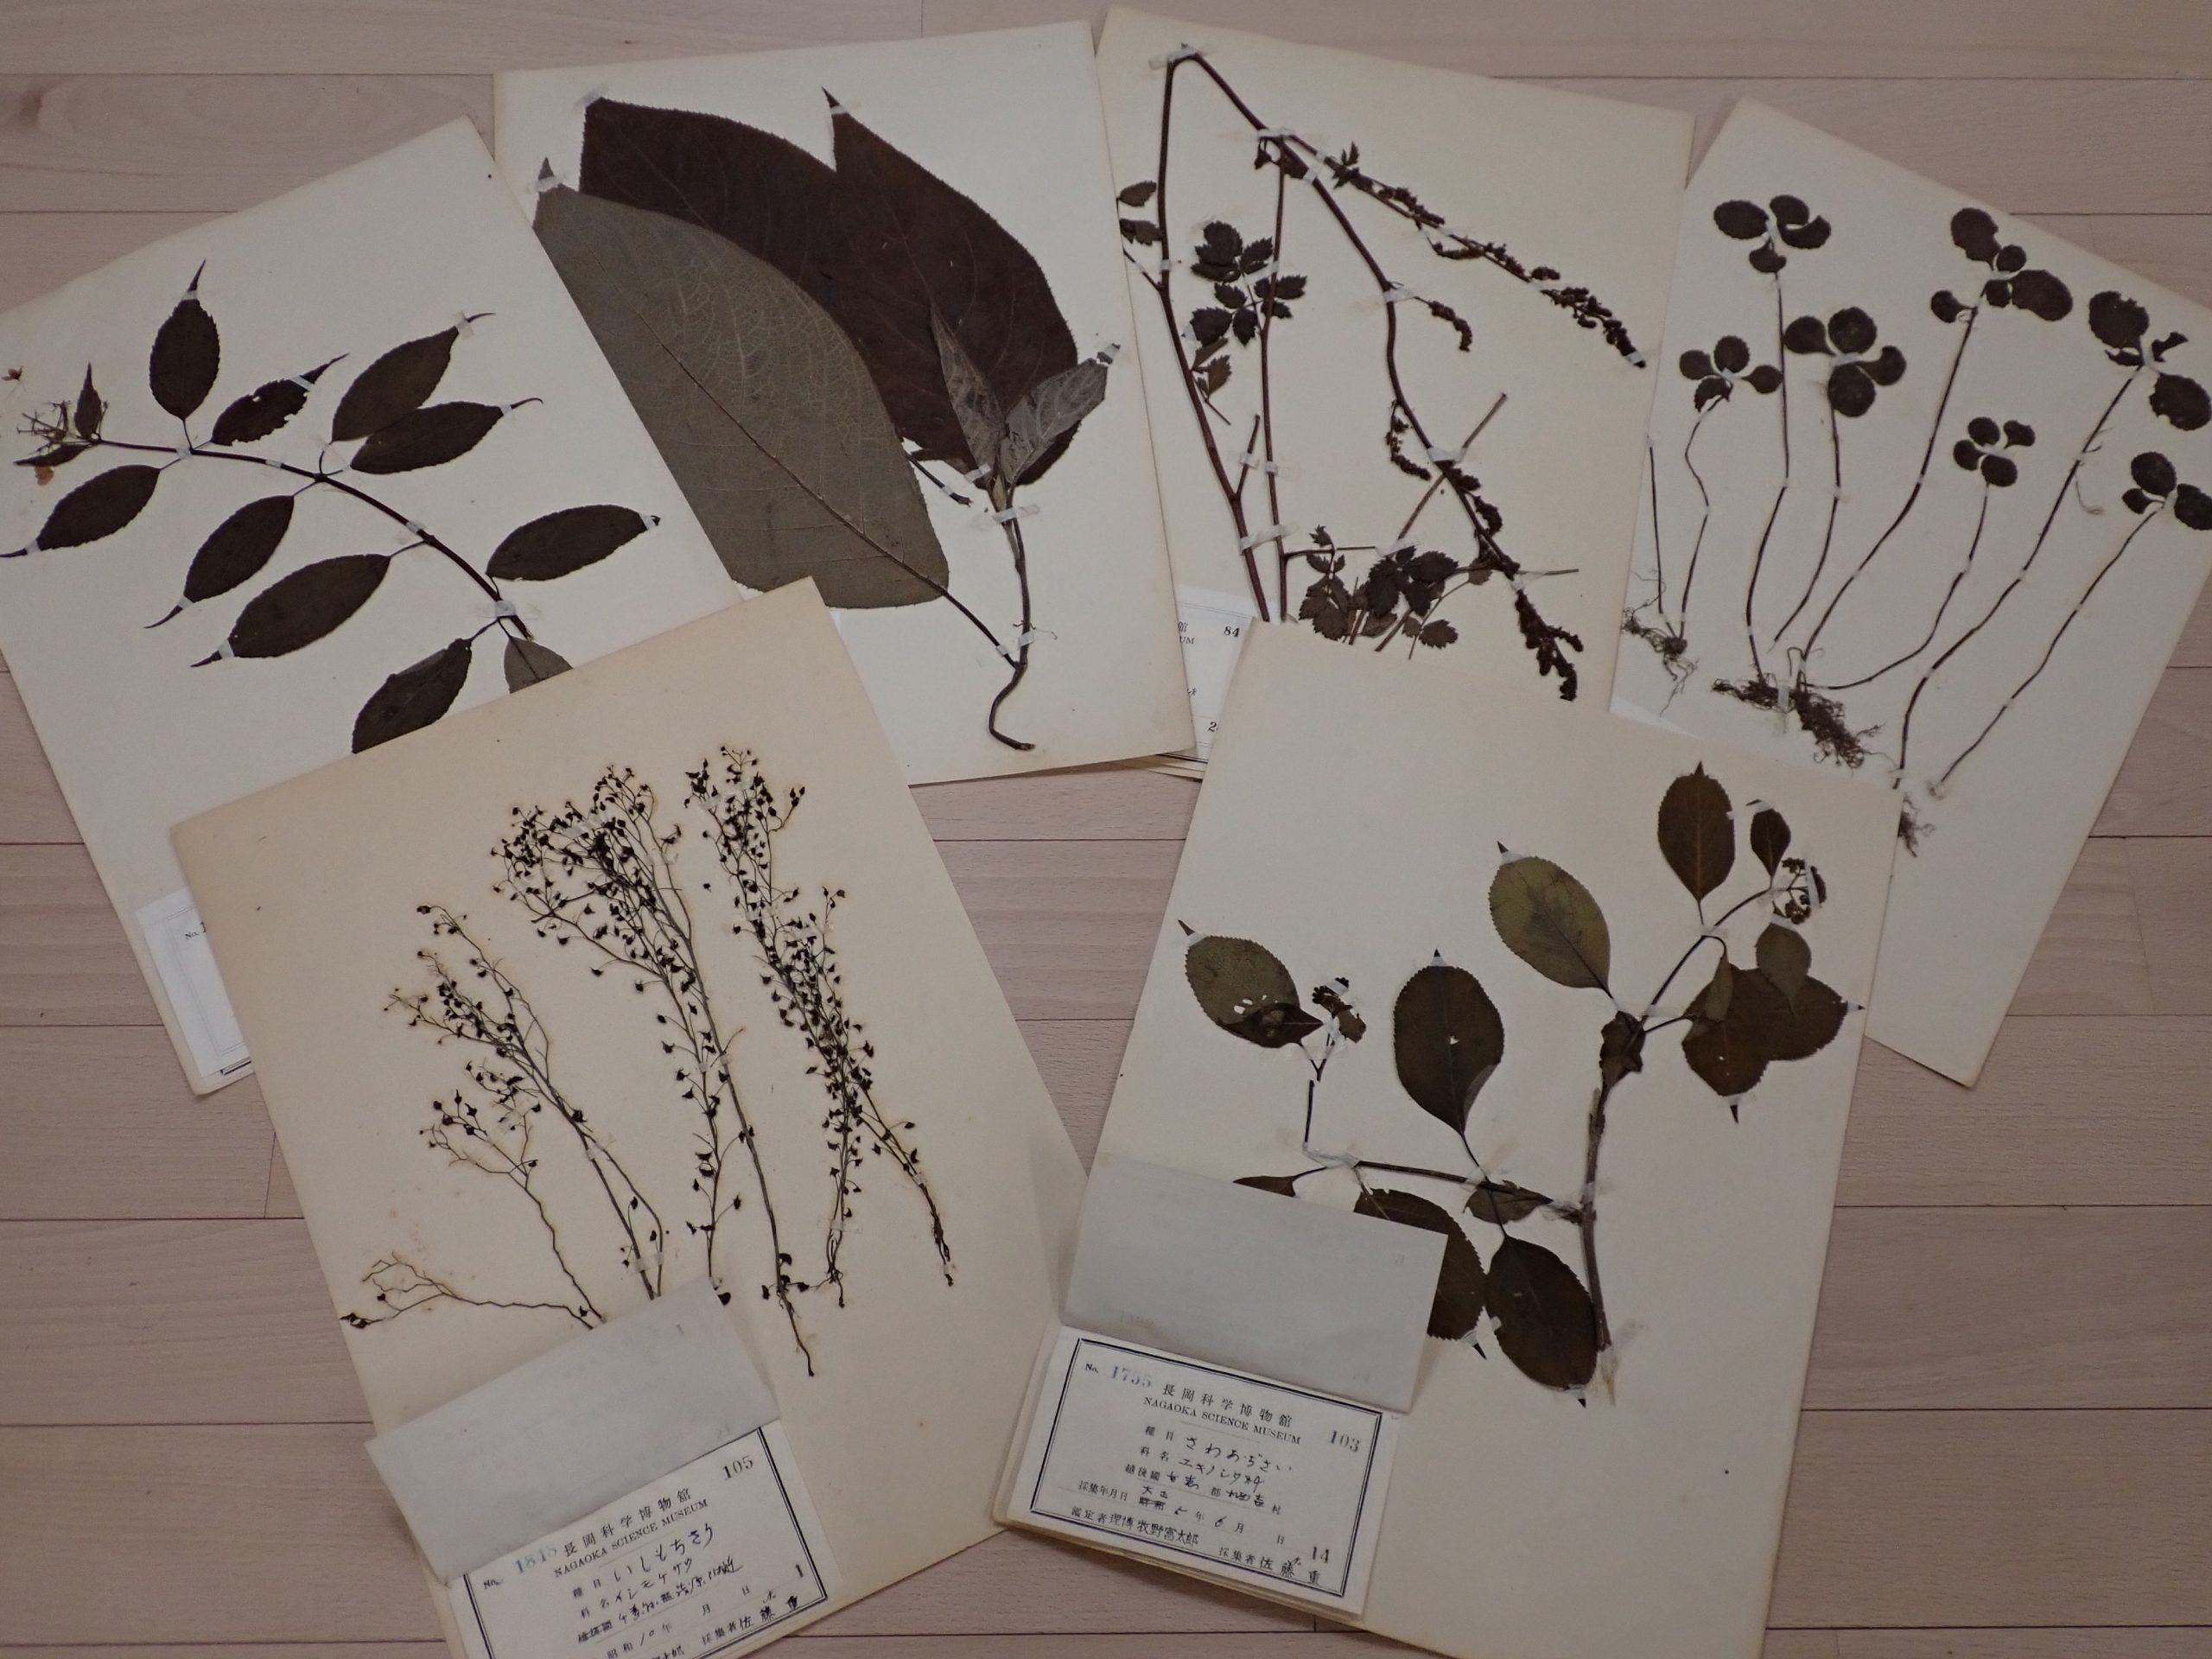 牧野富太郎博士が見た新潟の植物”></figure>
<p>牧野富太郎博士が見た新潟の植物－博士につながる標本から－ 会期：5月2日（火）〜 6月28日（水）</p>
<p><a class=